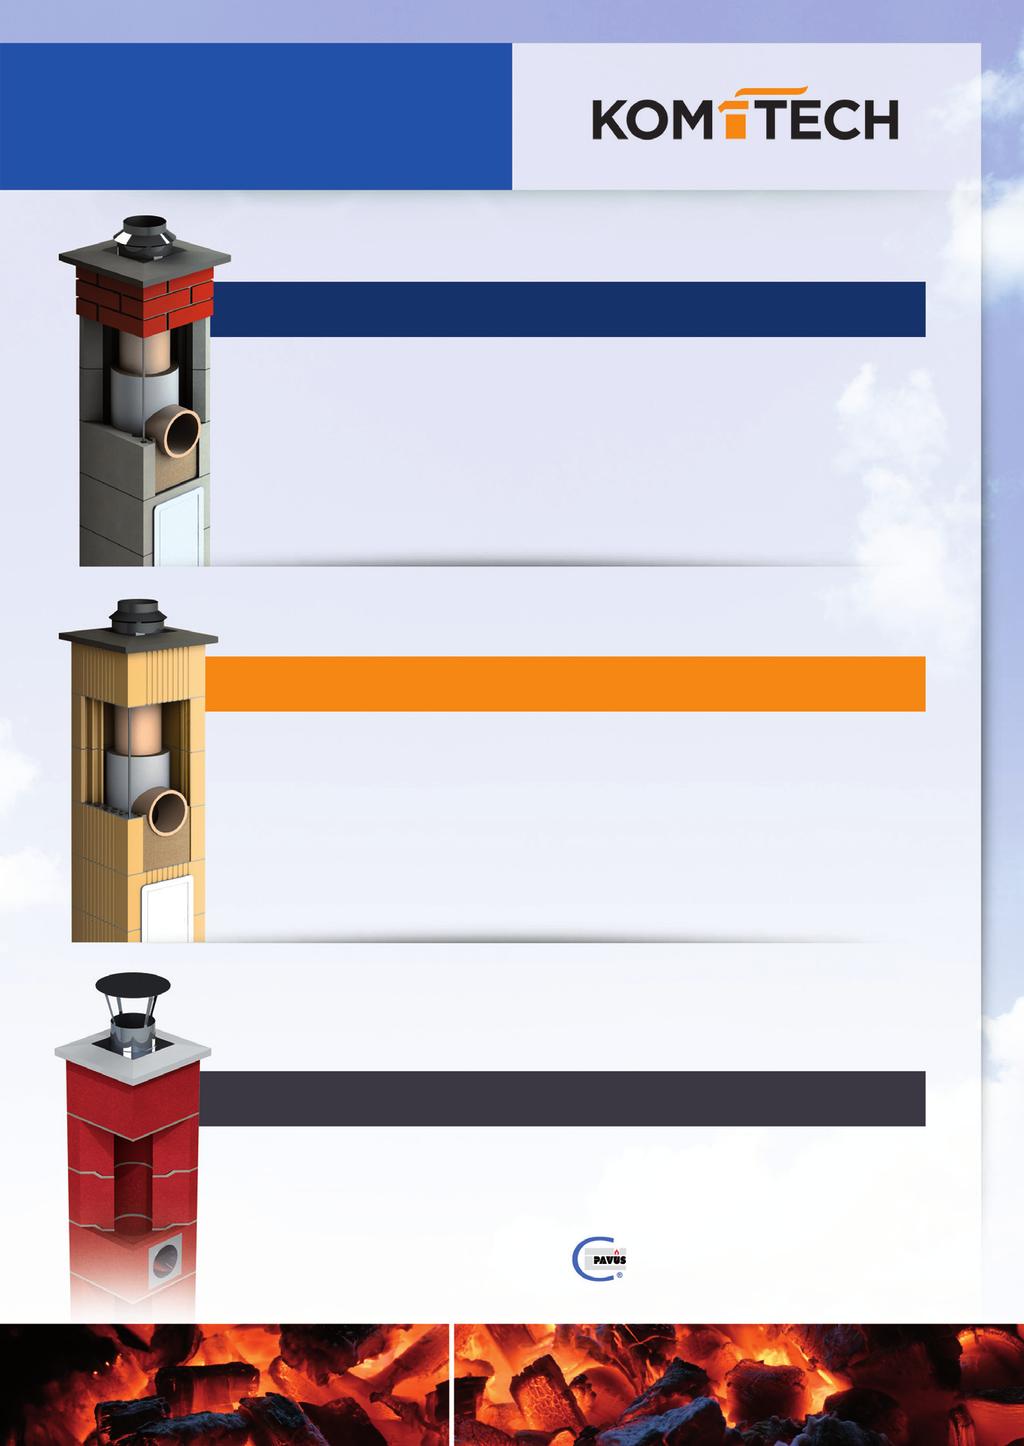 CENÍK Třísložkový komínový systém nejvyšší kvality, tvořený přesnou a lehčenou keramzitbetnovou tvárnicí, speciální tepelnou izolací a keramickou šamotovou vložkou. Pro všechny druhy paliv.